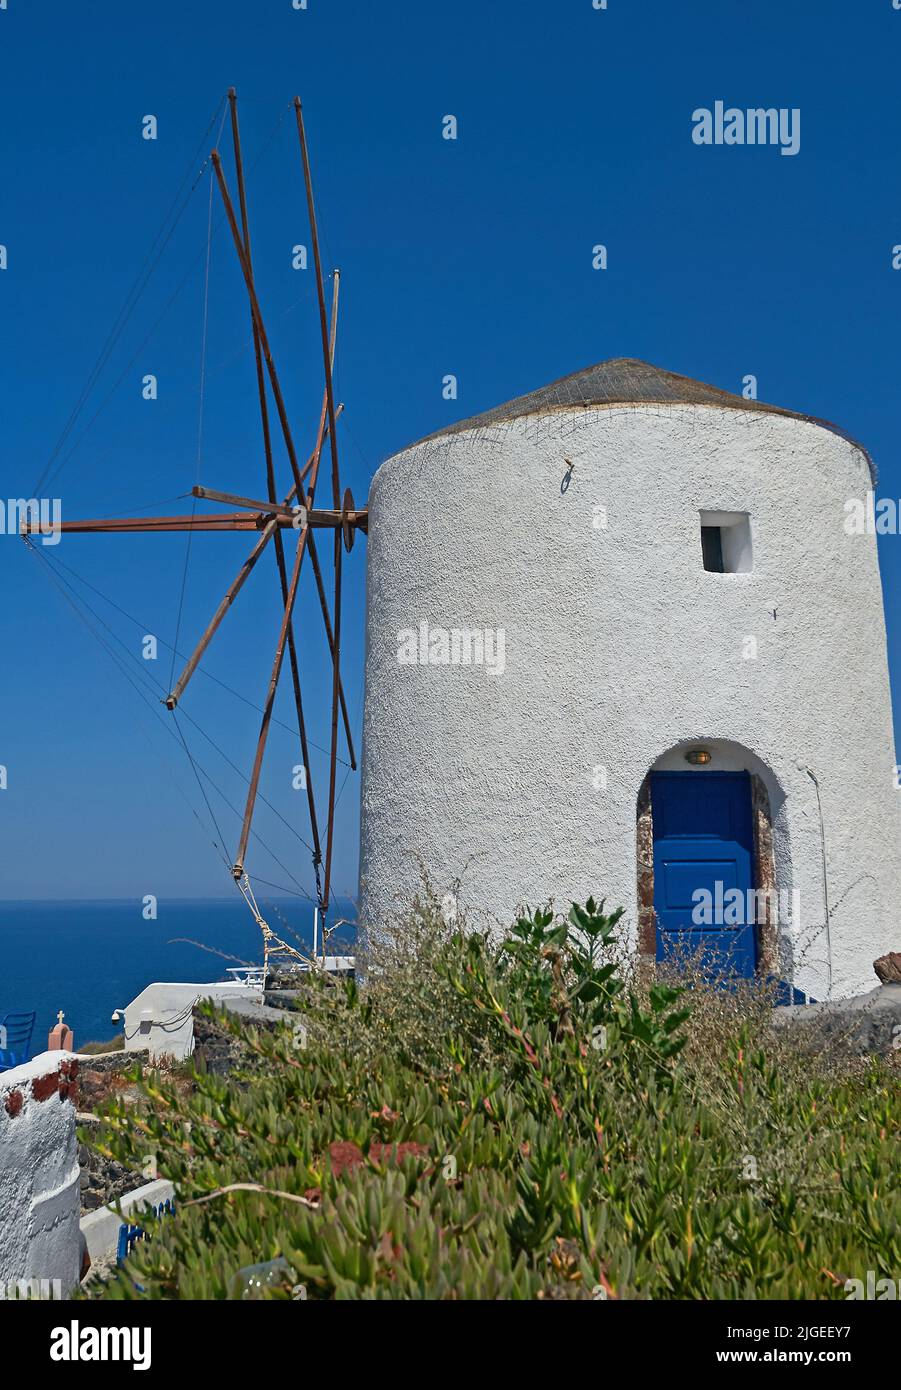 Oia oder Ia und eine weiß gewaschene Windmühle auf der Insel Santorini, die zu den Kykladen-Inseln vor dem griechischen Festland gehört Stockfoto